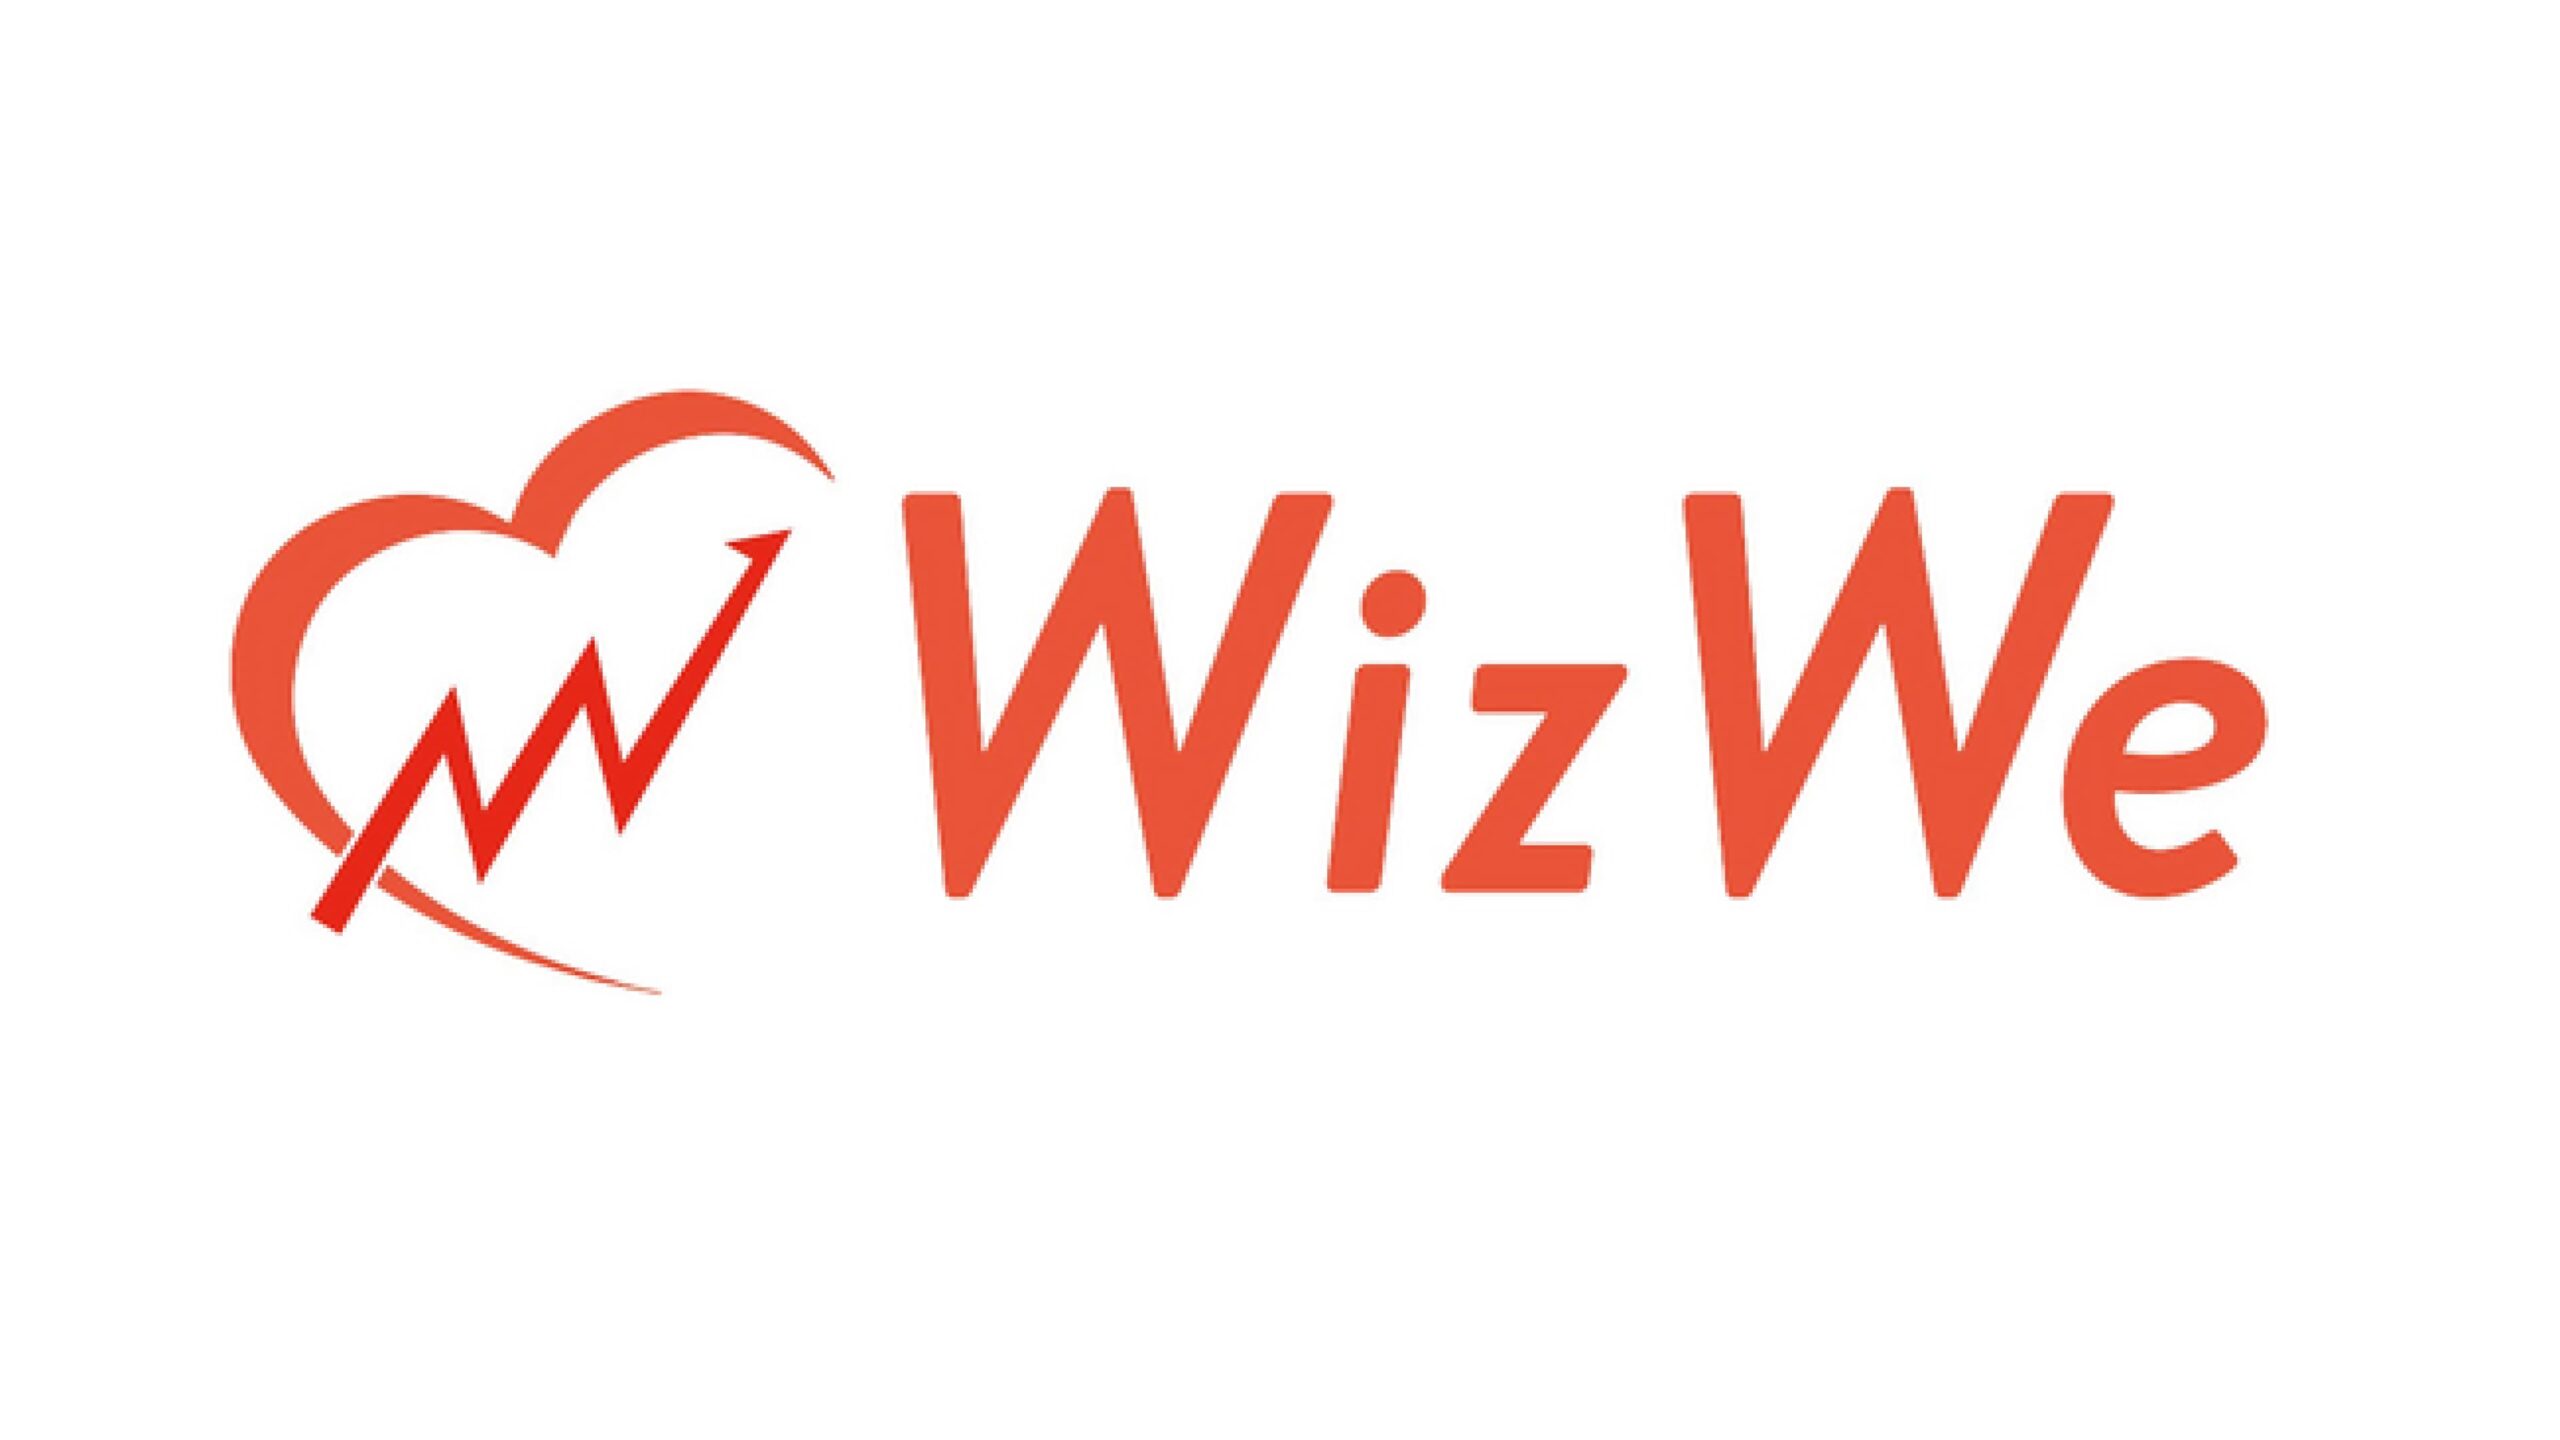 習慣化プラットフォーム「Smart Habit」の株式会社WizWeが明治安田未来共創ファンドより資金調達を実施し、新たな価値創造への挑戦を開始